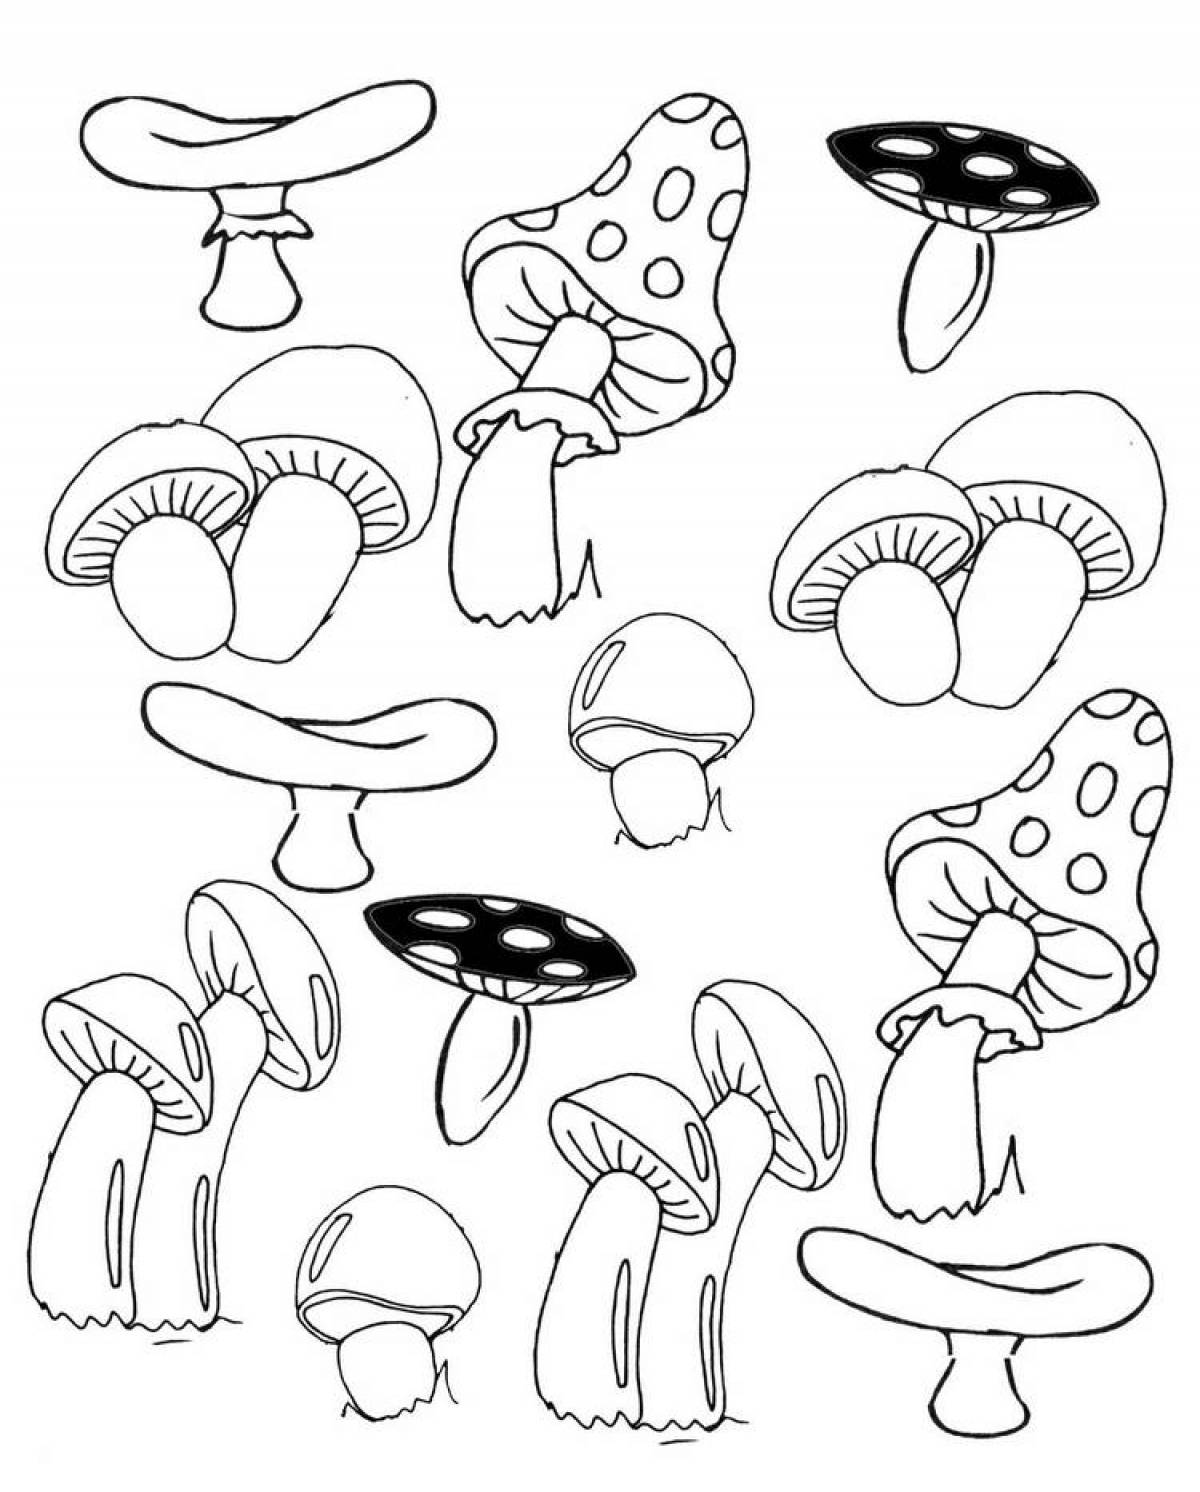 Fun mushroom coloring for kids